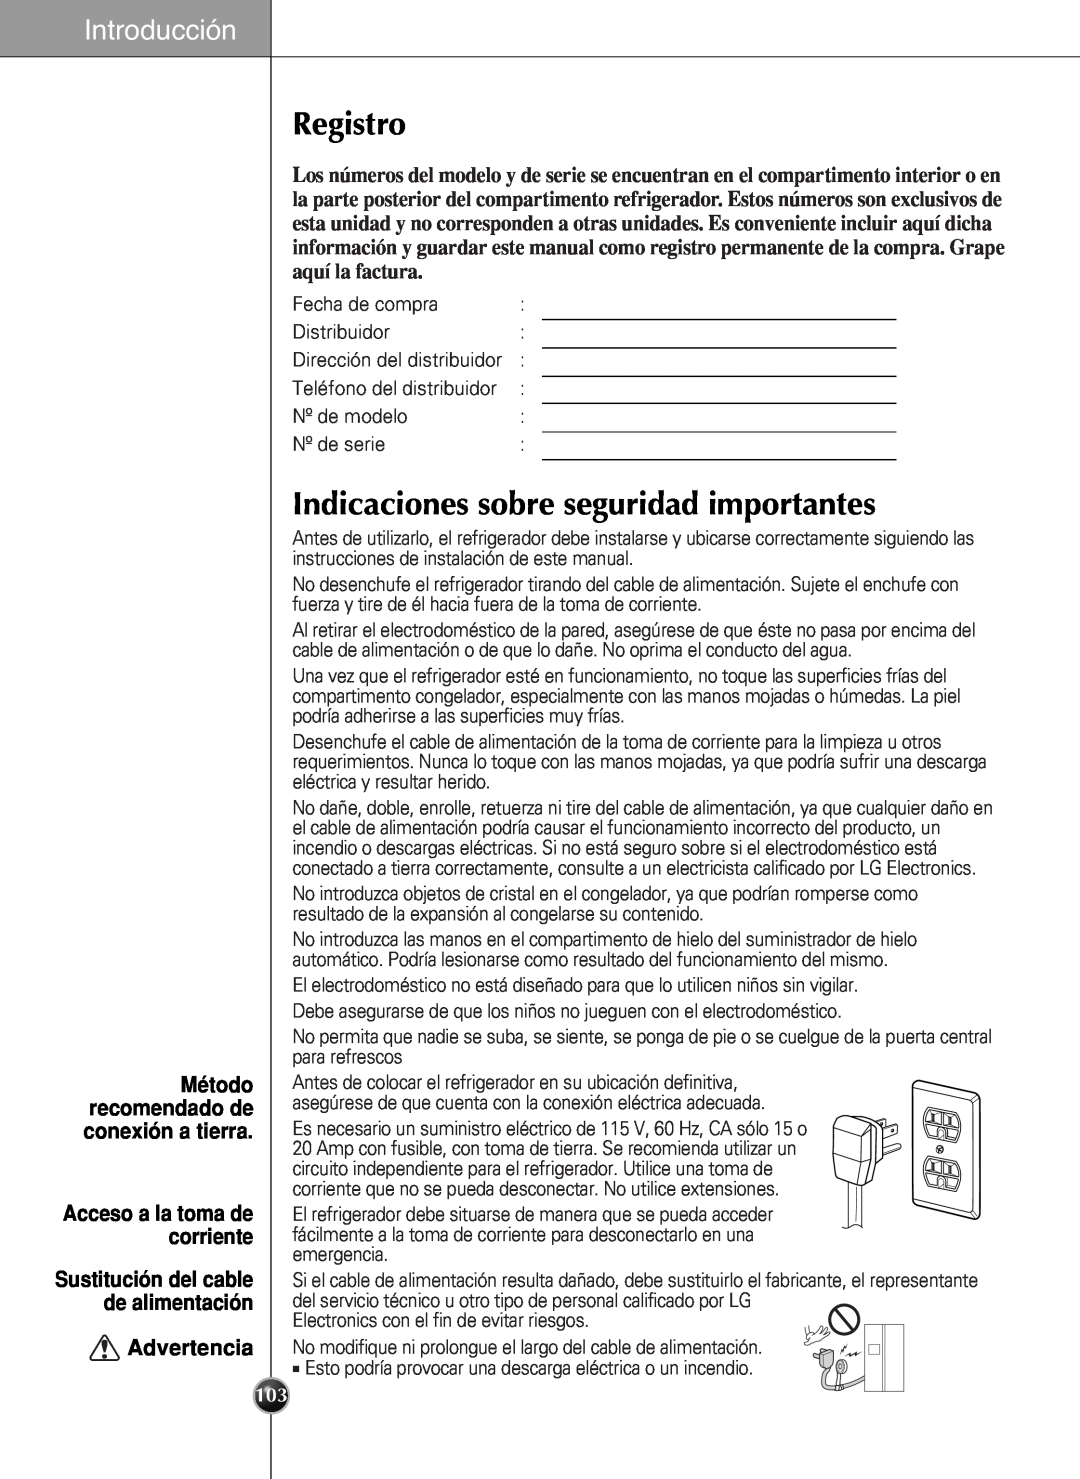 LG Electronics LSC27990TT manual Registro, Indicaciones sobre seguridad importantes, Introducción, Advertencia 